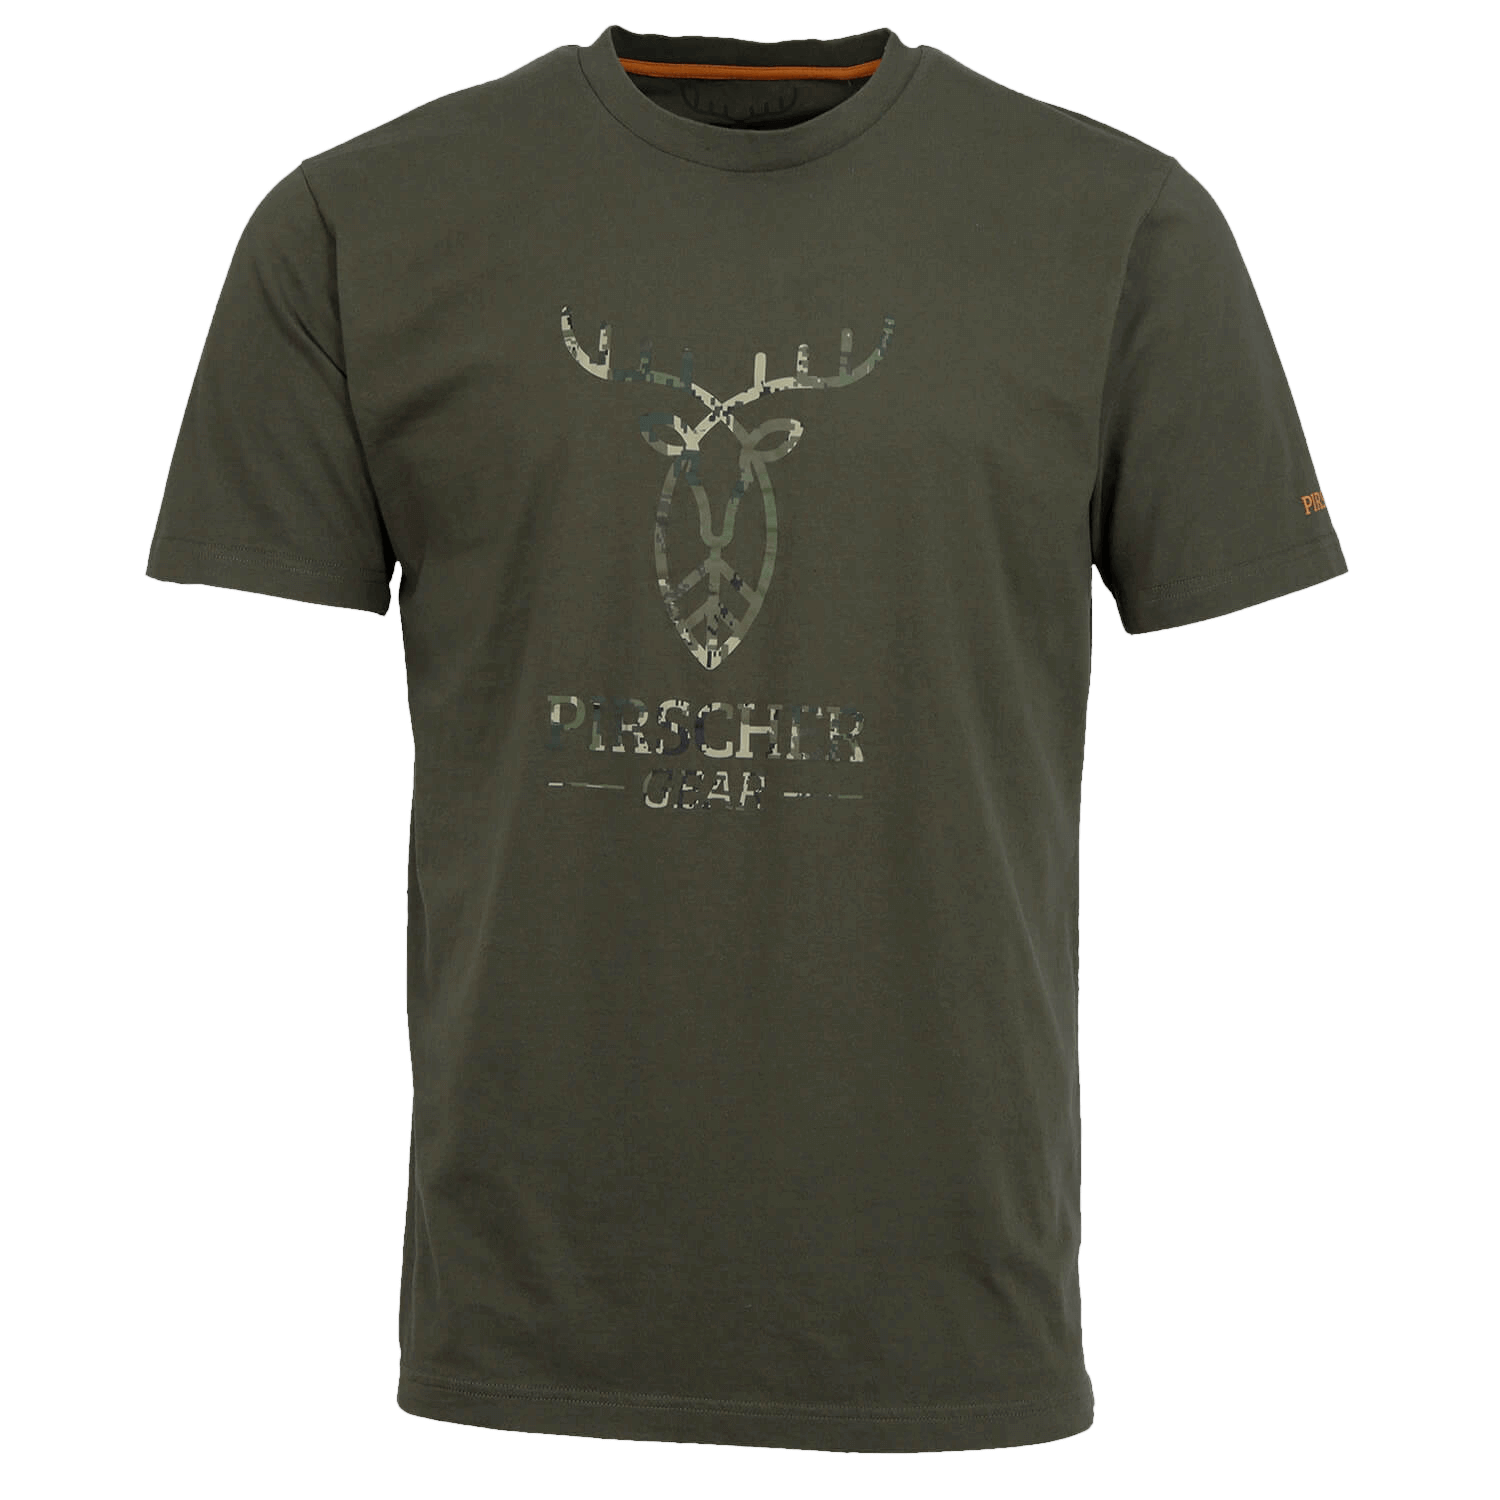  Pirscher Gear T-Shirt Full Logo (Optimax) - Jachtshirts